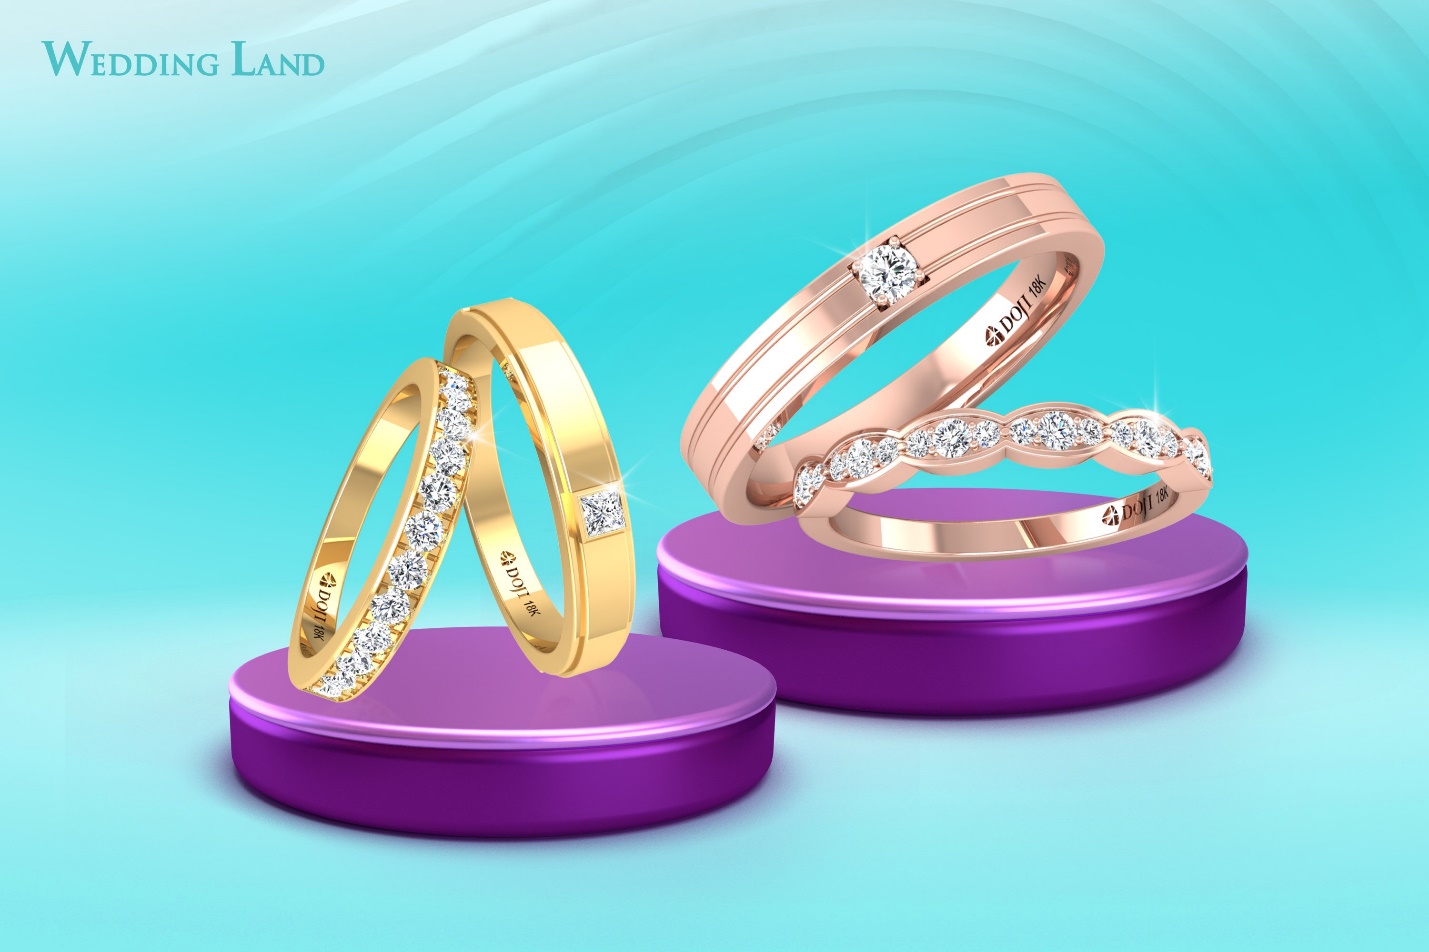 Trọn vẹn khoảnh khắc chung đôi, Wedding Land ưu đãi tới 5 triệu đồng khi mua Trang sức cưới - Ảnh 3.